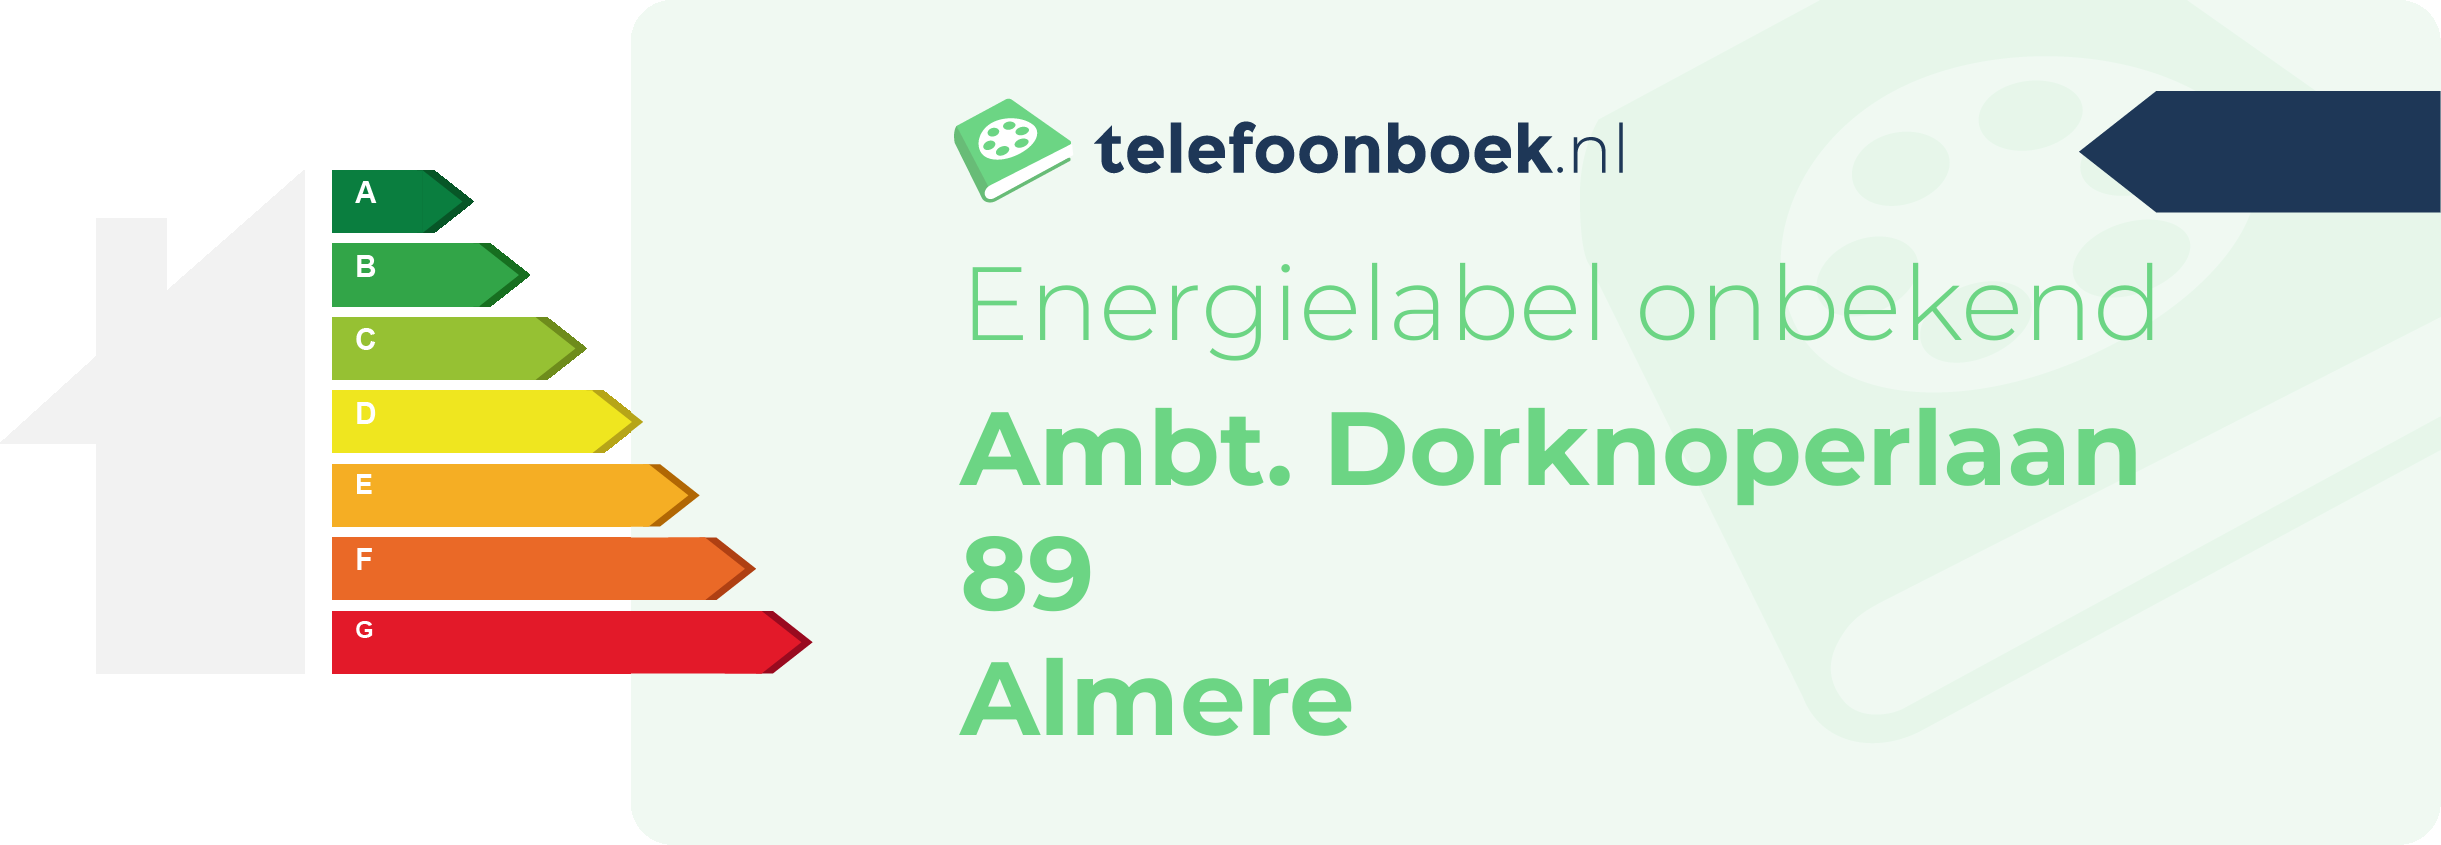 Energielabel Ambt. Dorknoperlaan 89 Almere